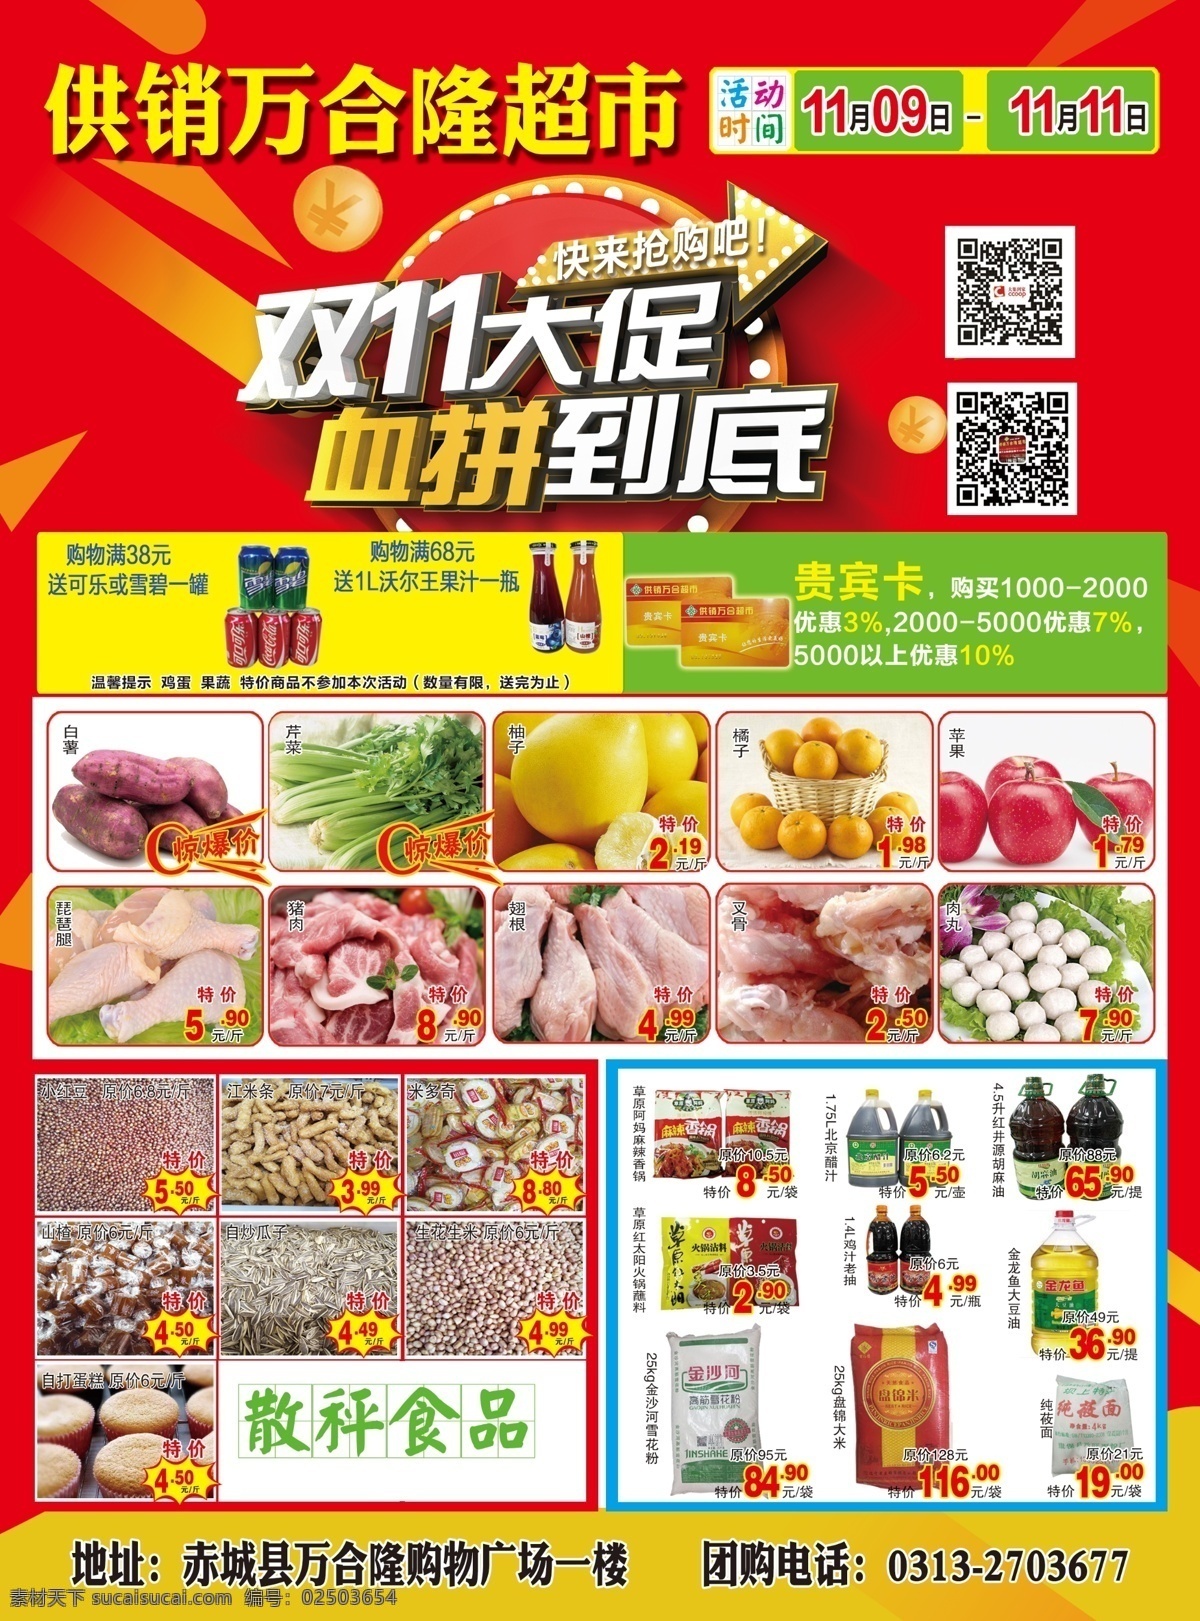 双11 促销dm单 超市 海报 dm单 商品